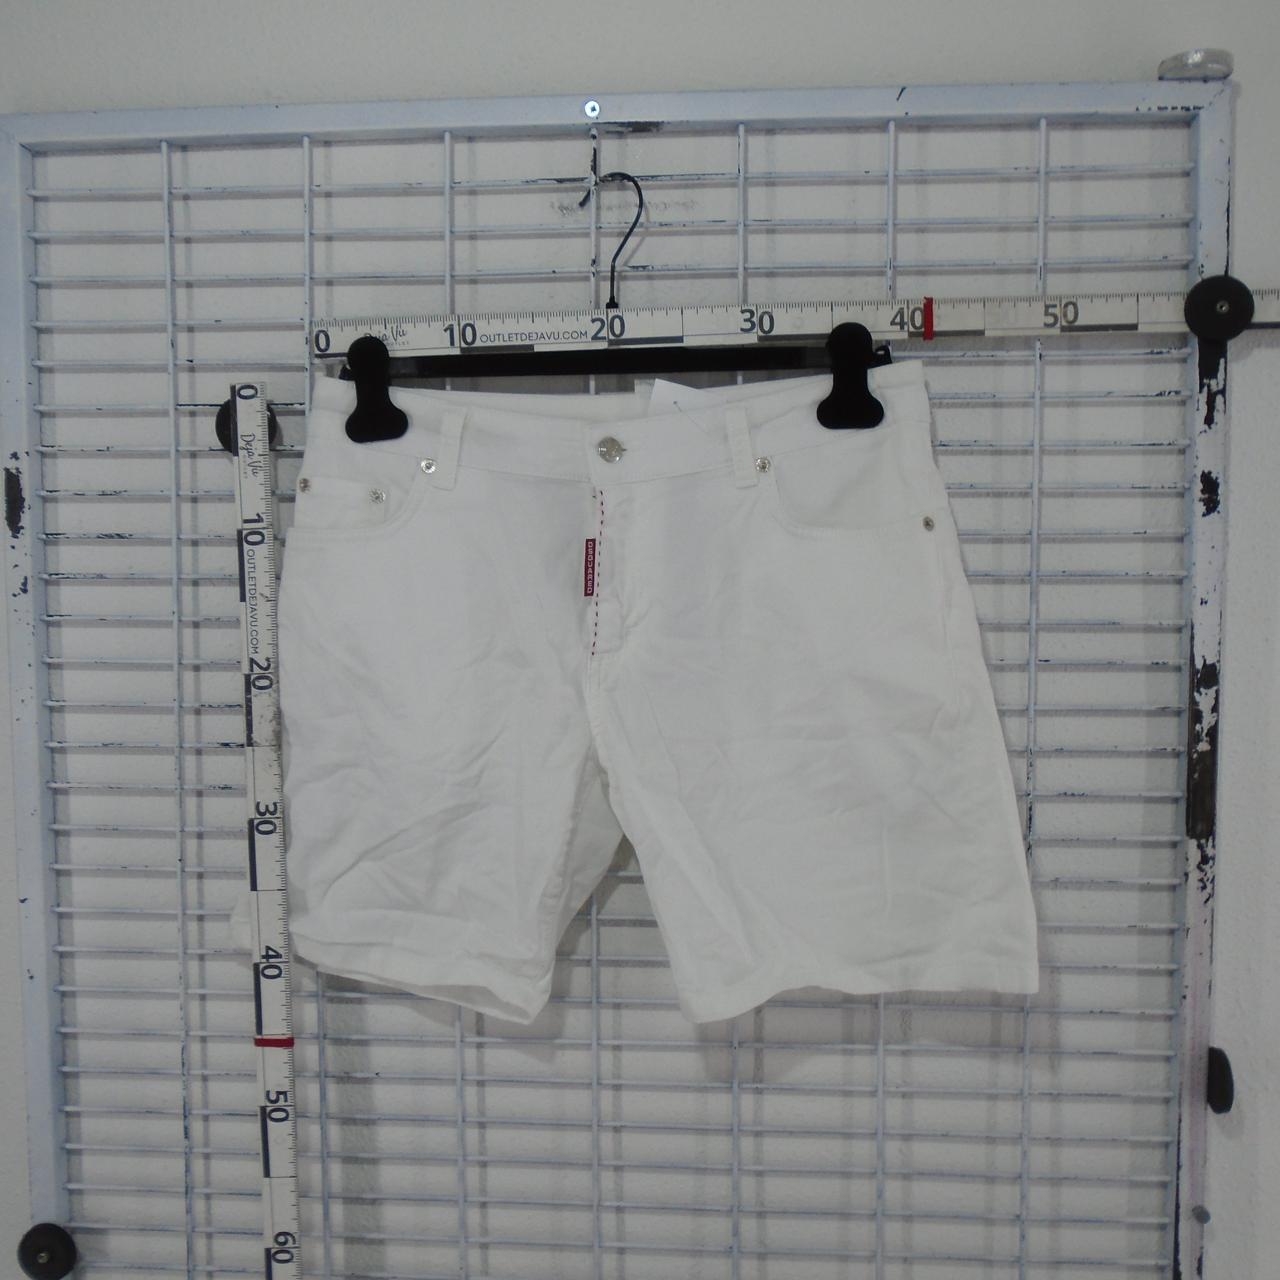 Pantalones cortos de mujer Dsquared2. Blanco. M. Usado. Bien